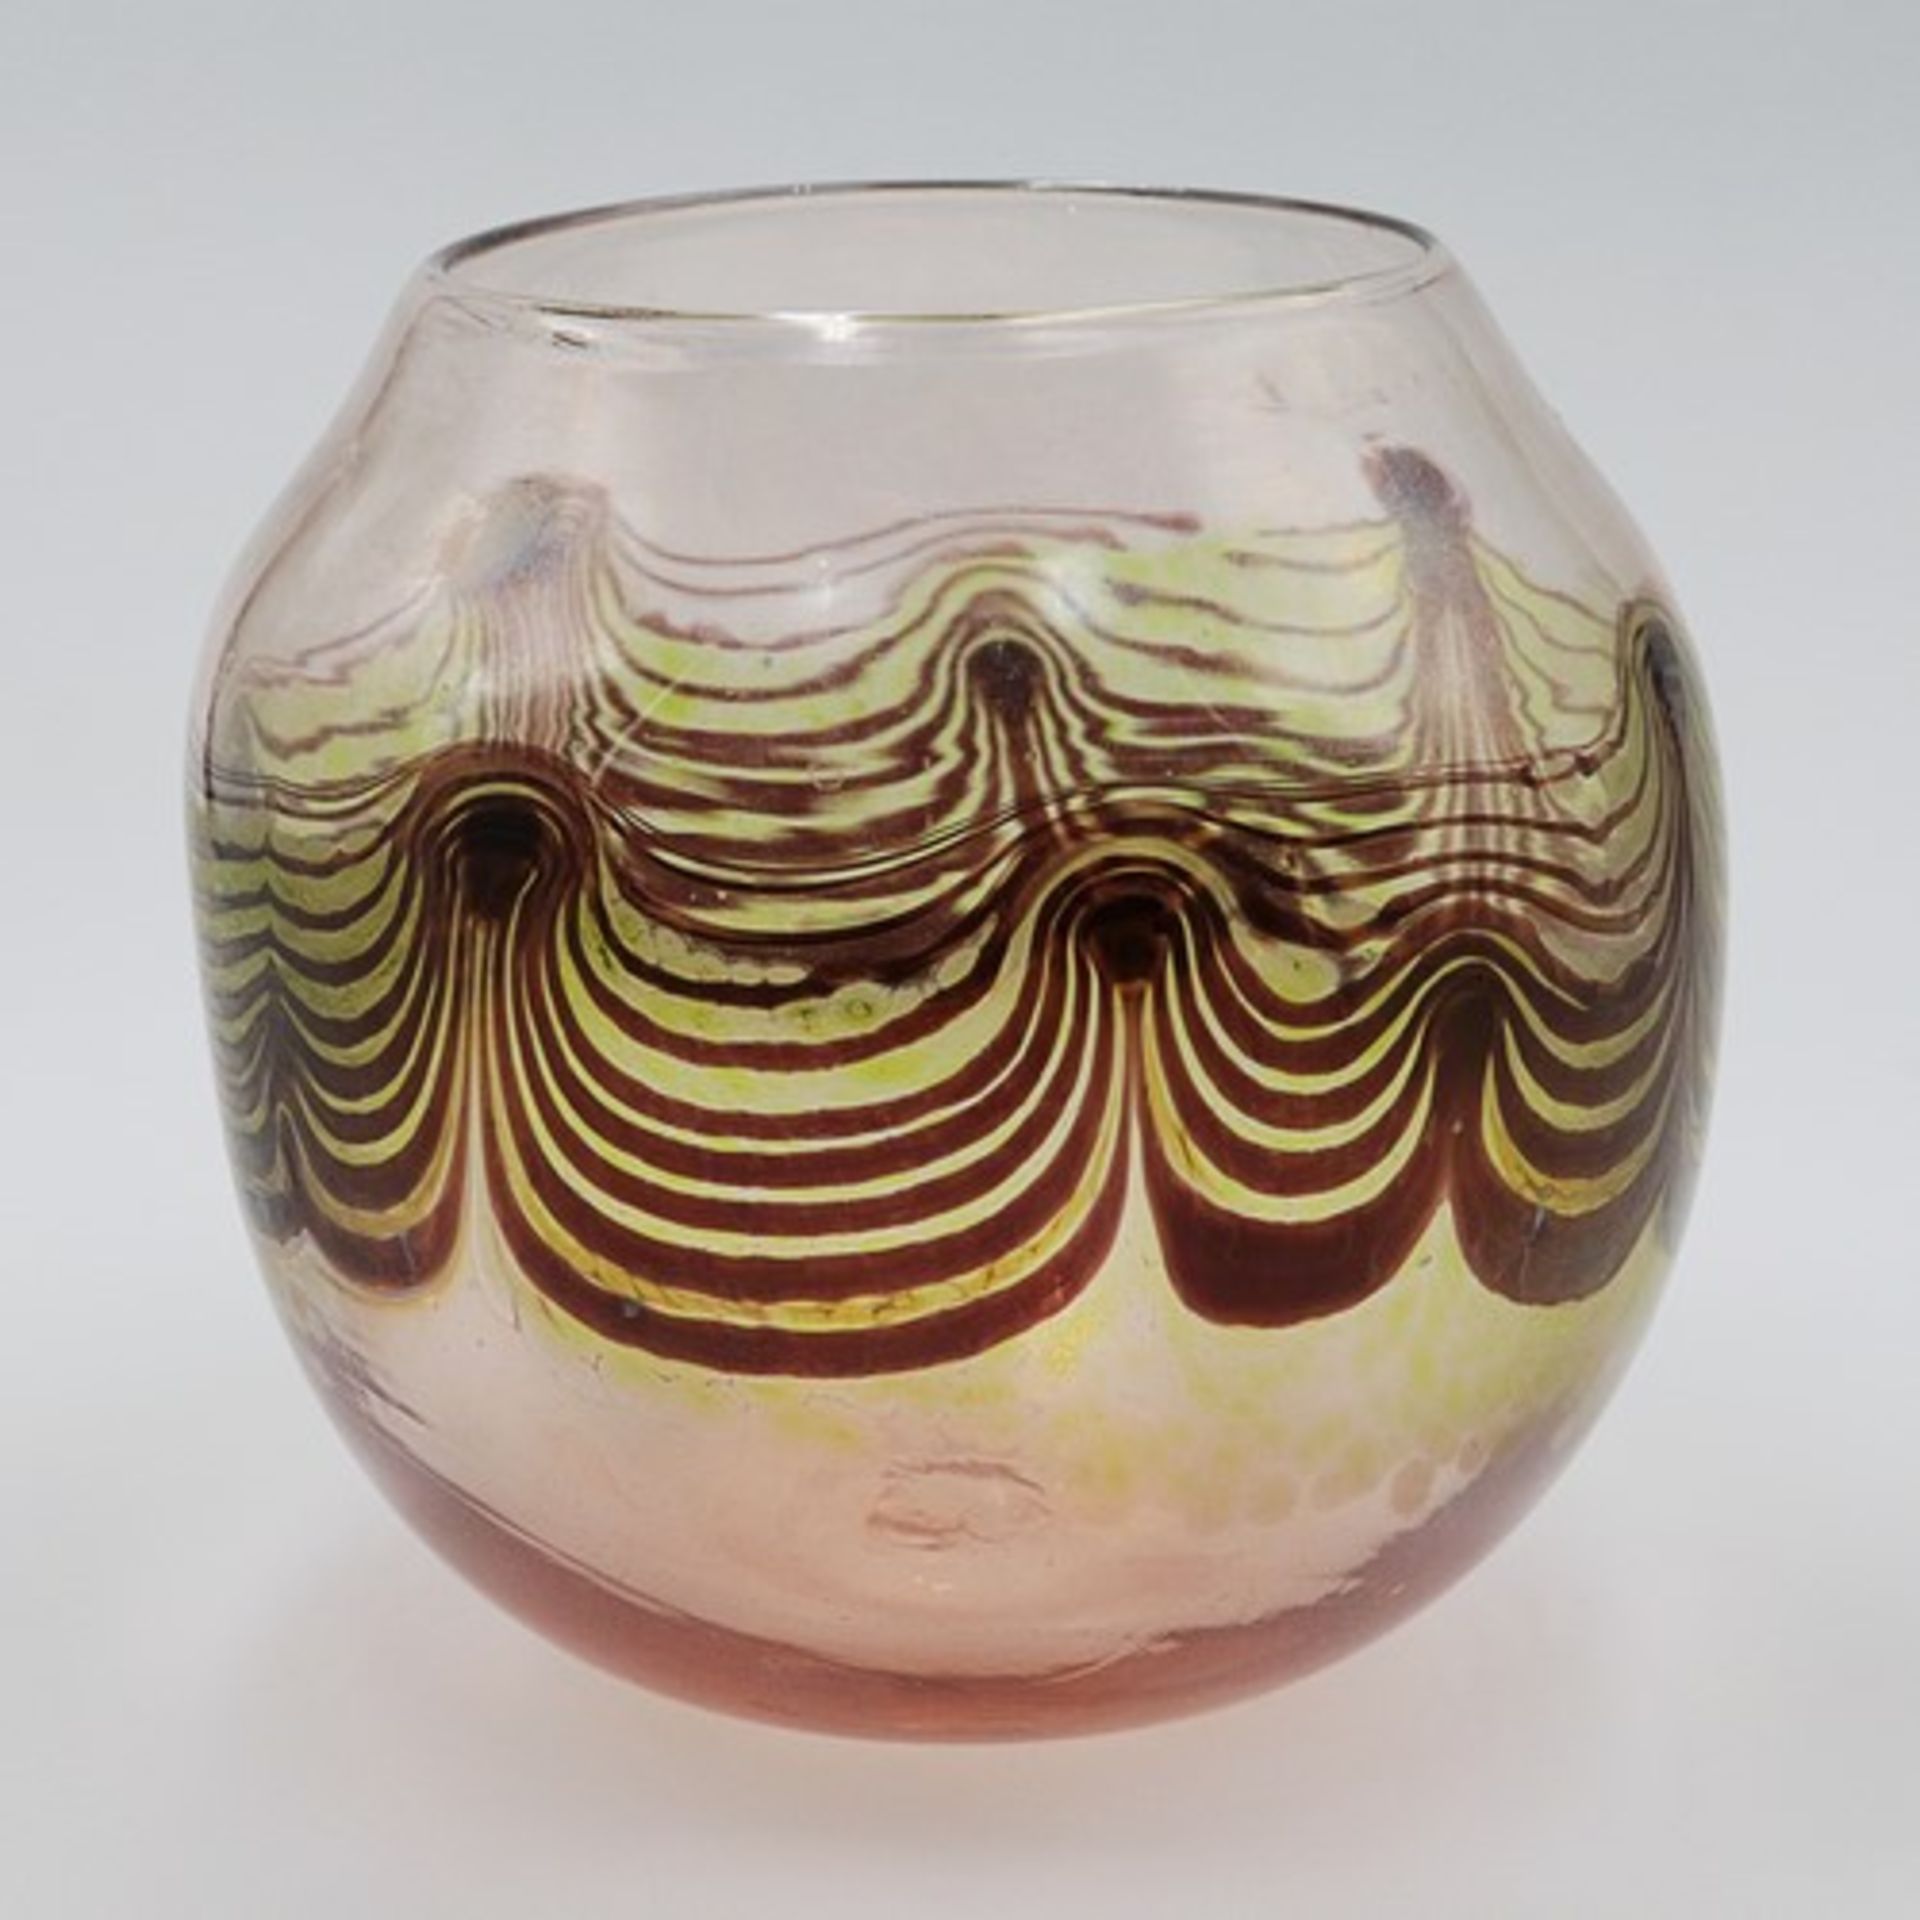 Studioglas - Vase1976, wohl Zwiesel, farbloses Glas, nach unten hin pfirsichfarbend verlaufend, - Bild 2 aus 4